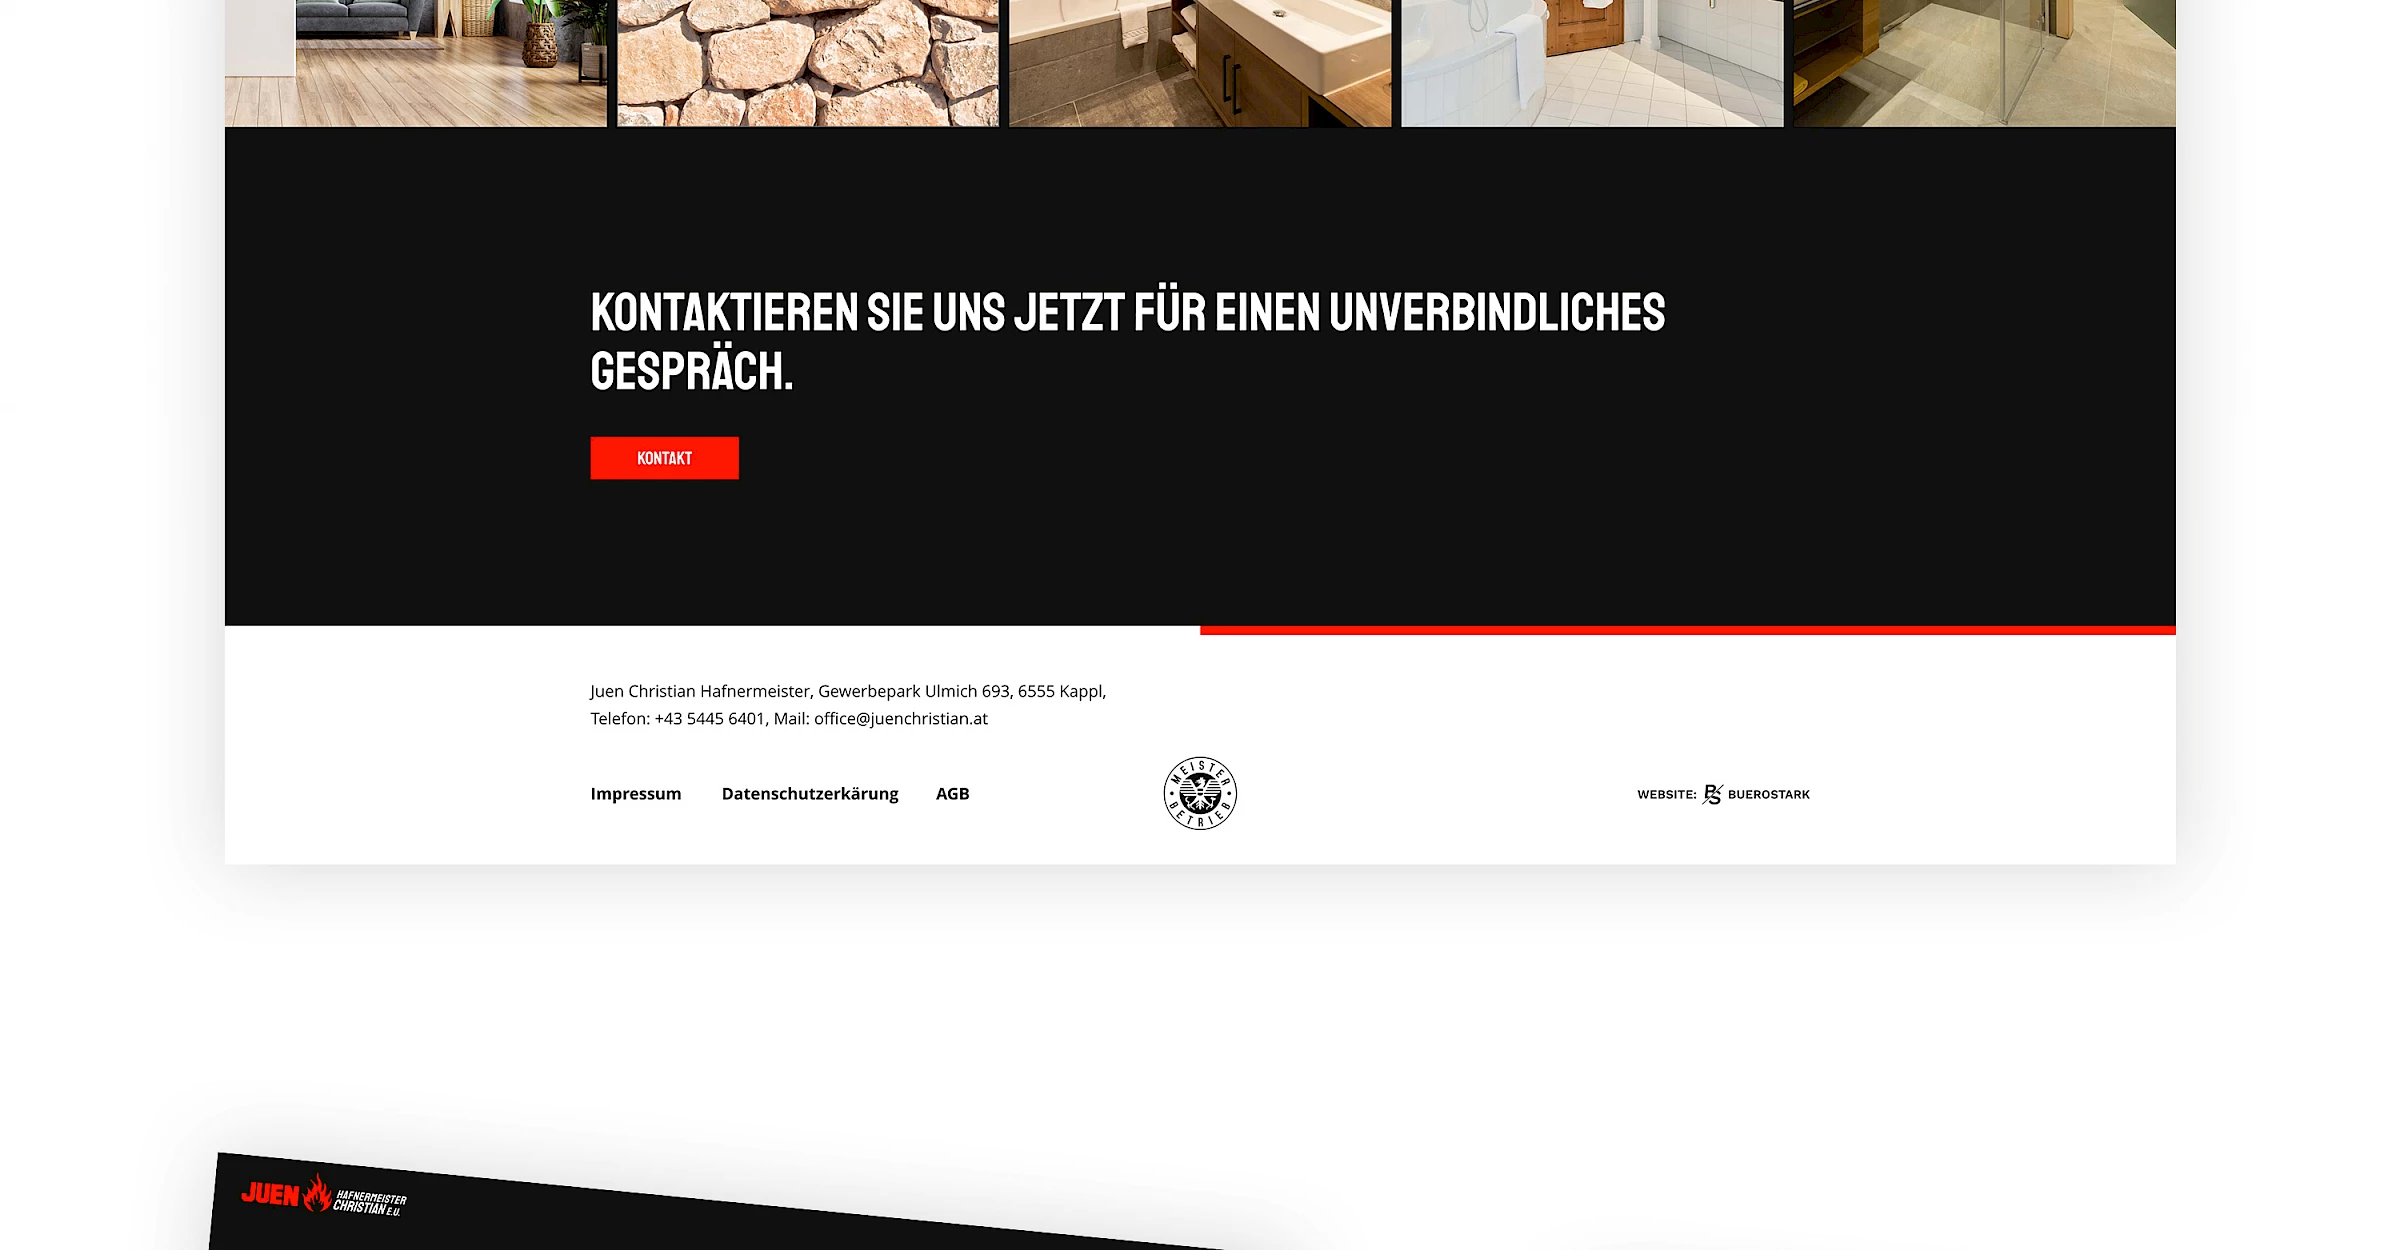 Webdesign der Website juenchristian.at, designed und programmiert von Buerostark Werbeagentur in Telfs